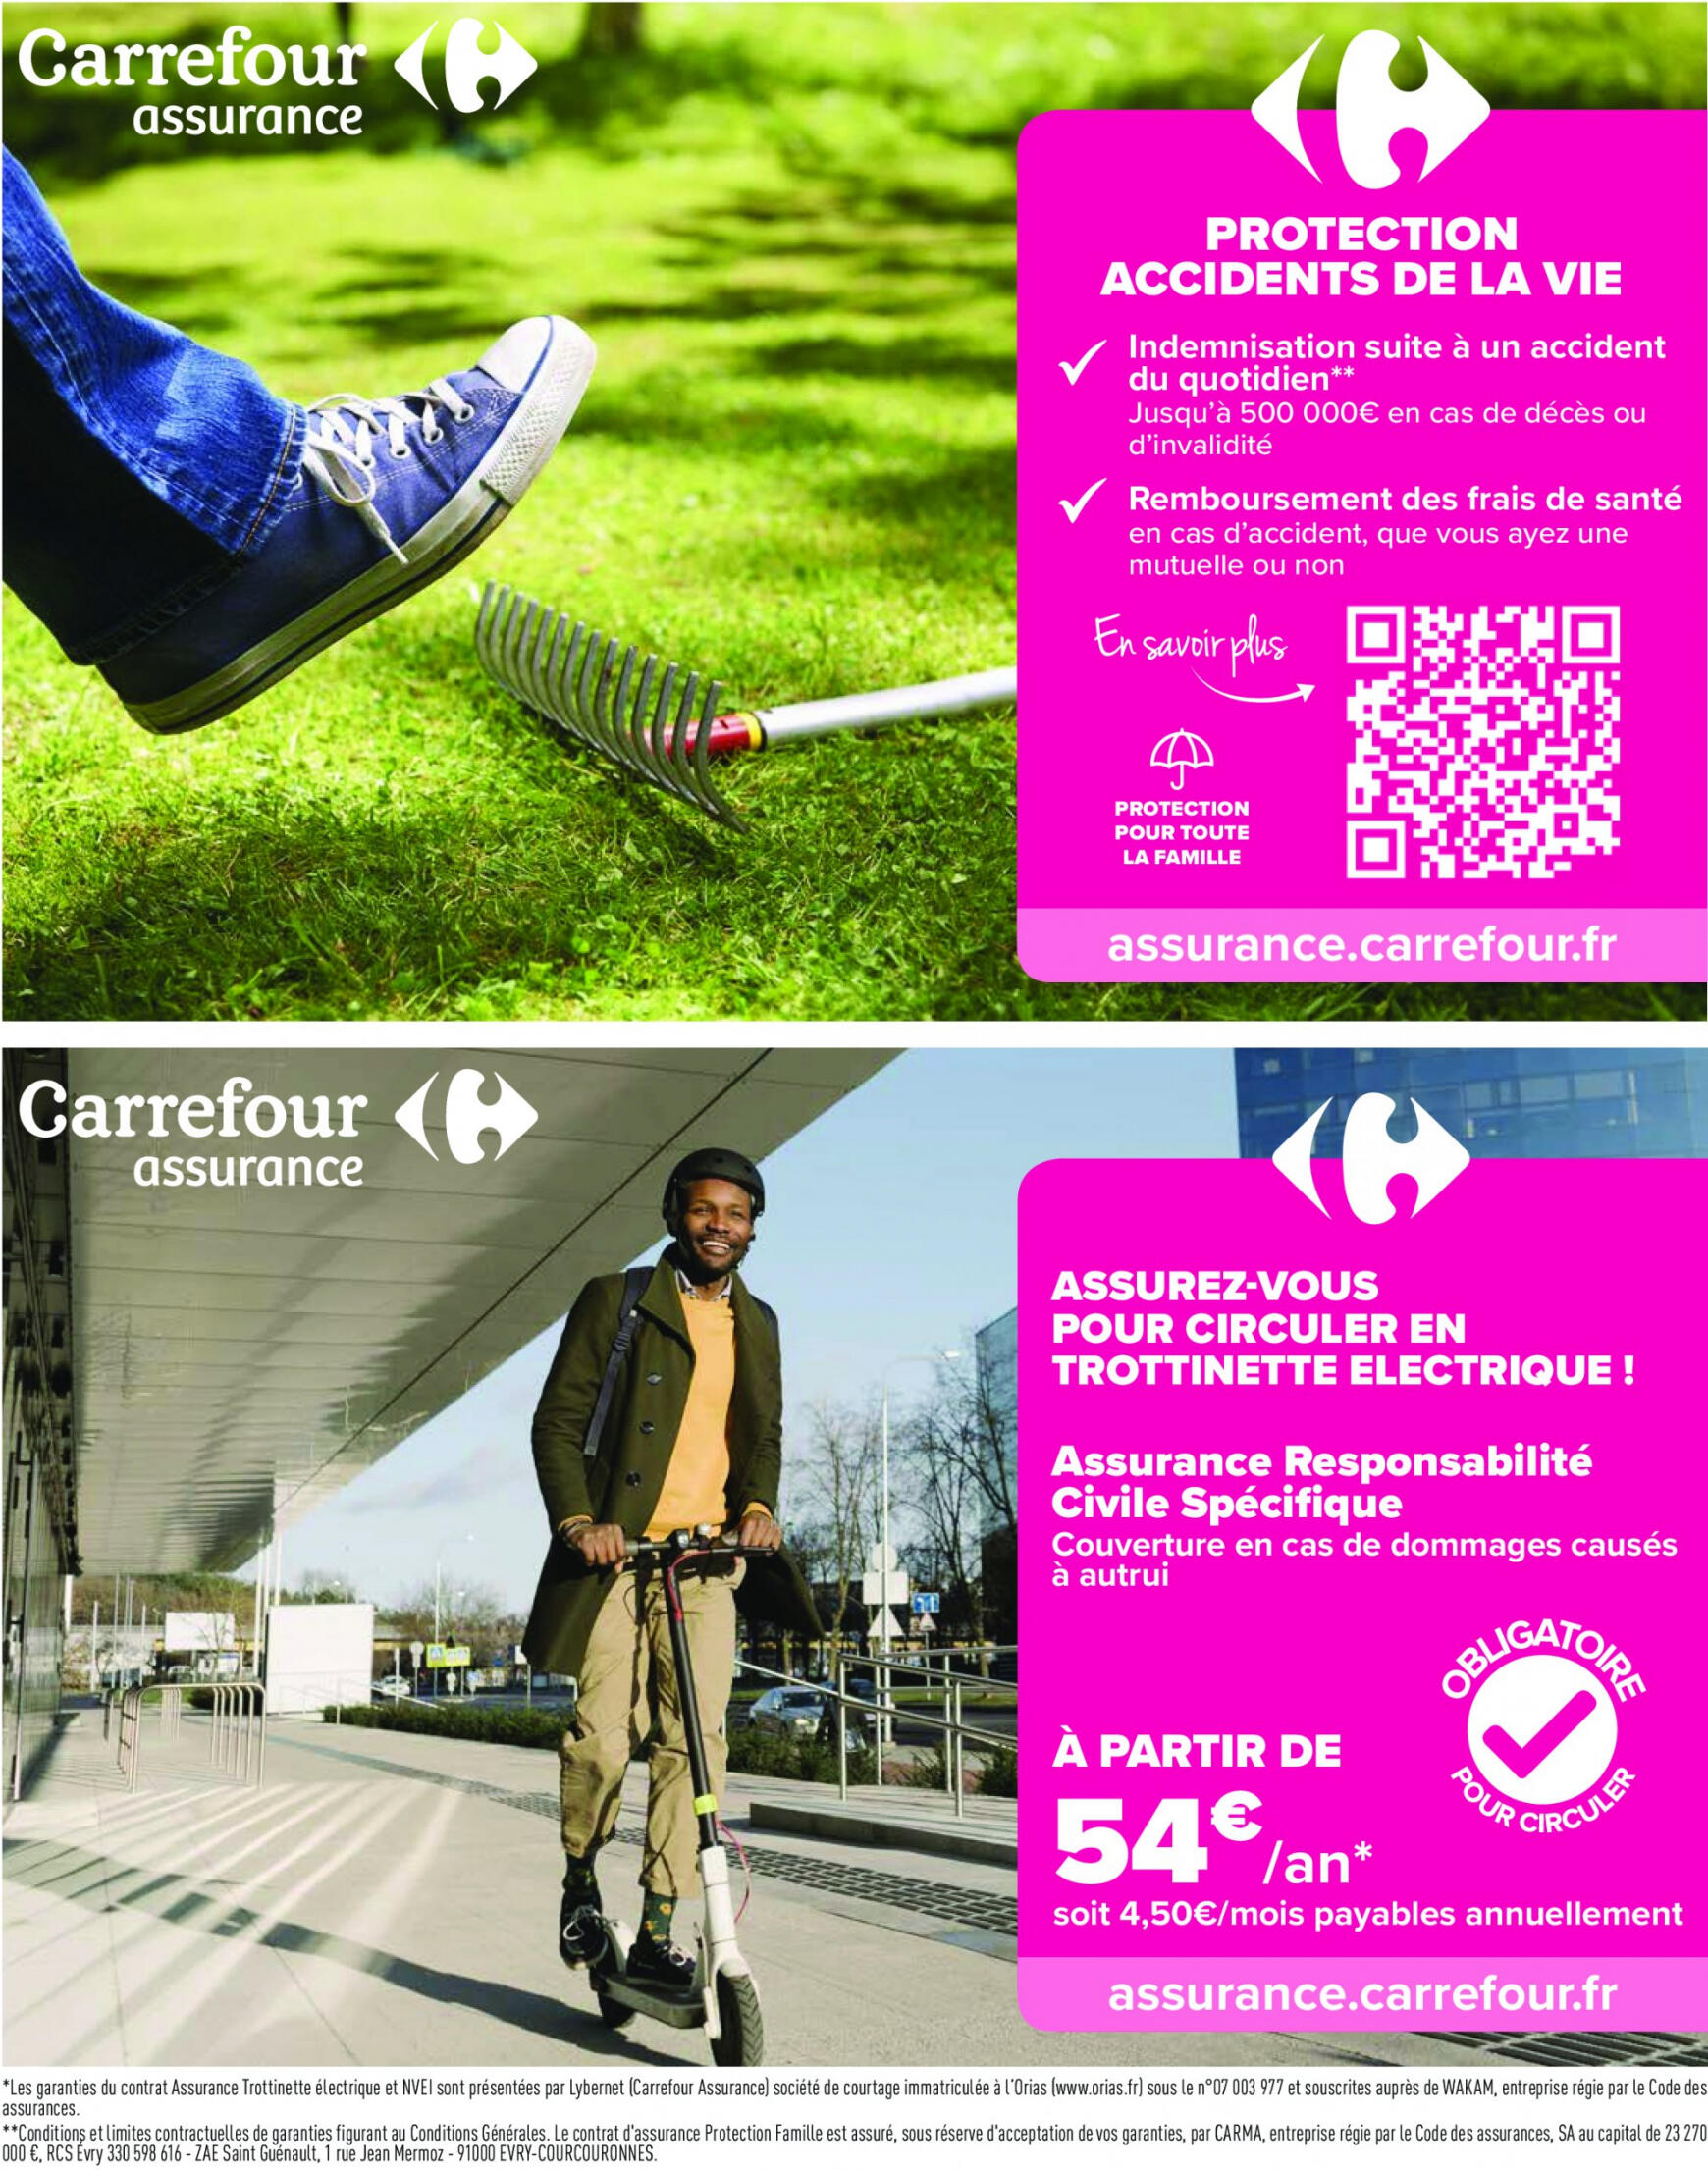 carrefour - Prospectus Carrefour actuel 16.04. - 29.04. - page: 59